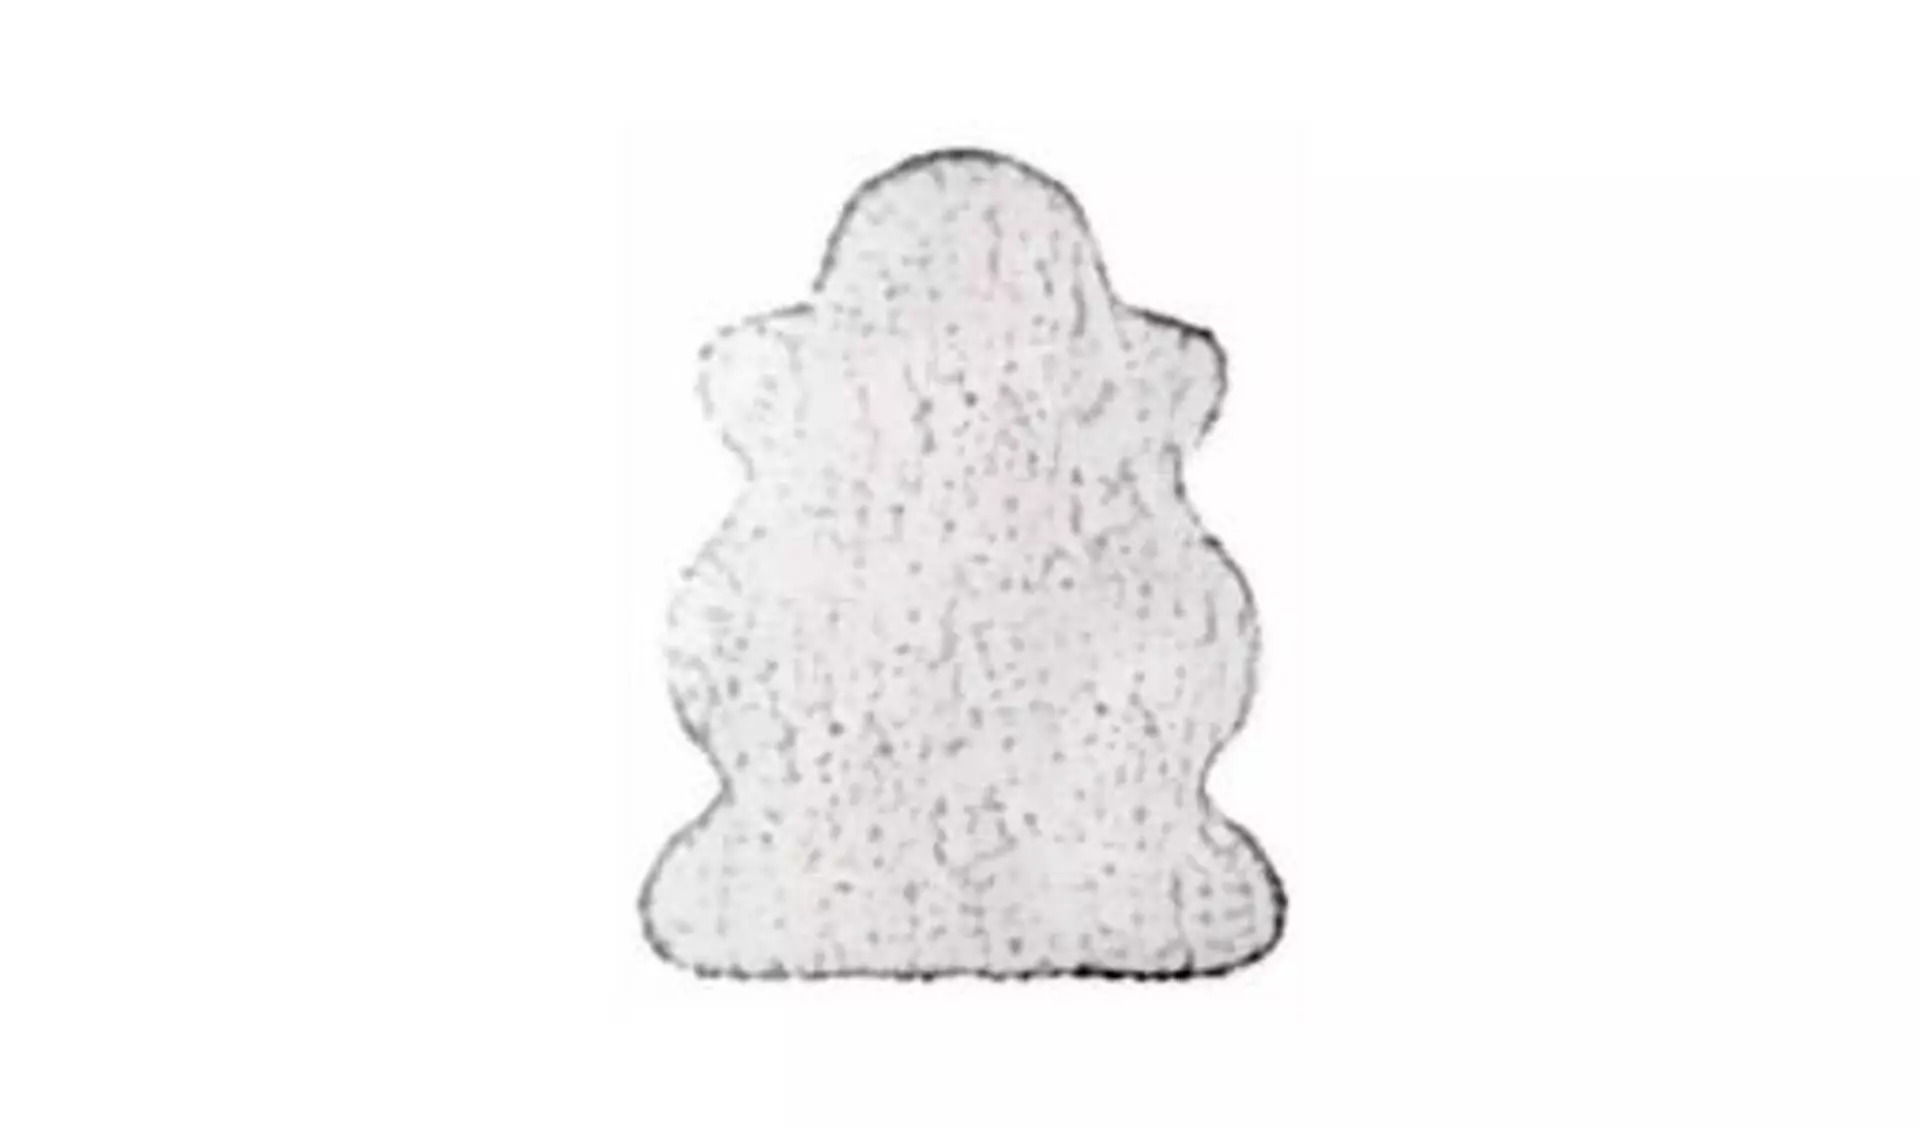 Fellteppich in der typischen Form eines Schaffells. Das helle Icon steht für alle Teppiche aus Fell.